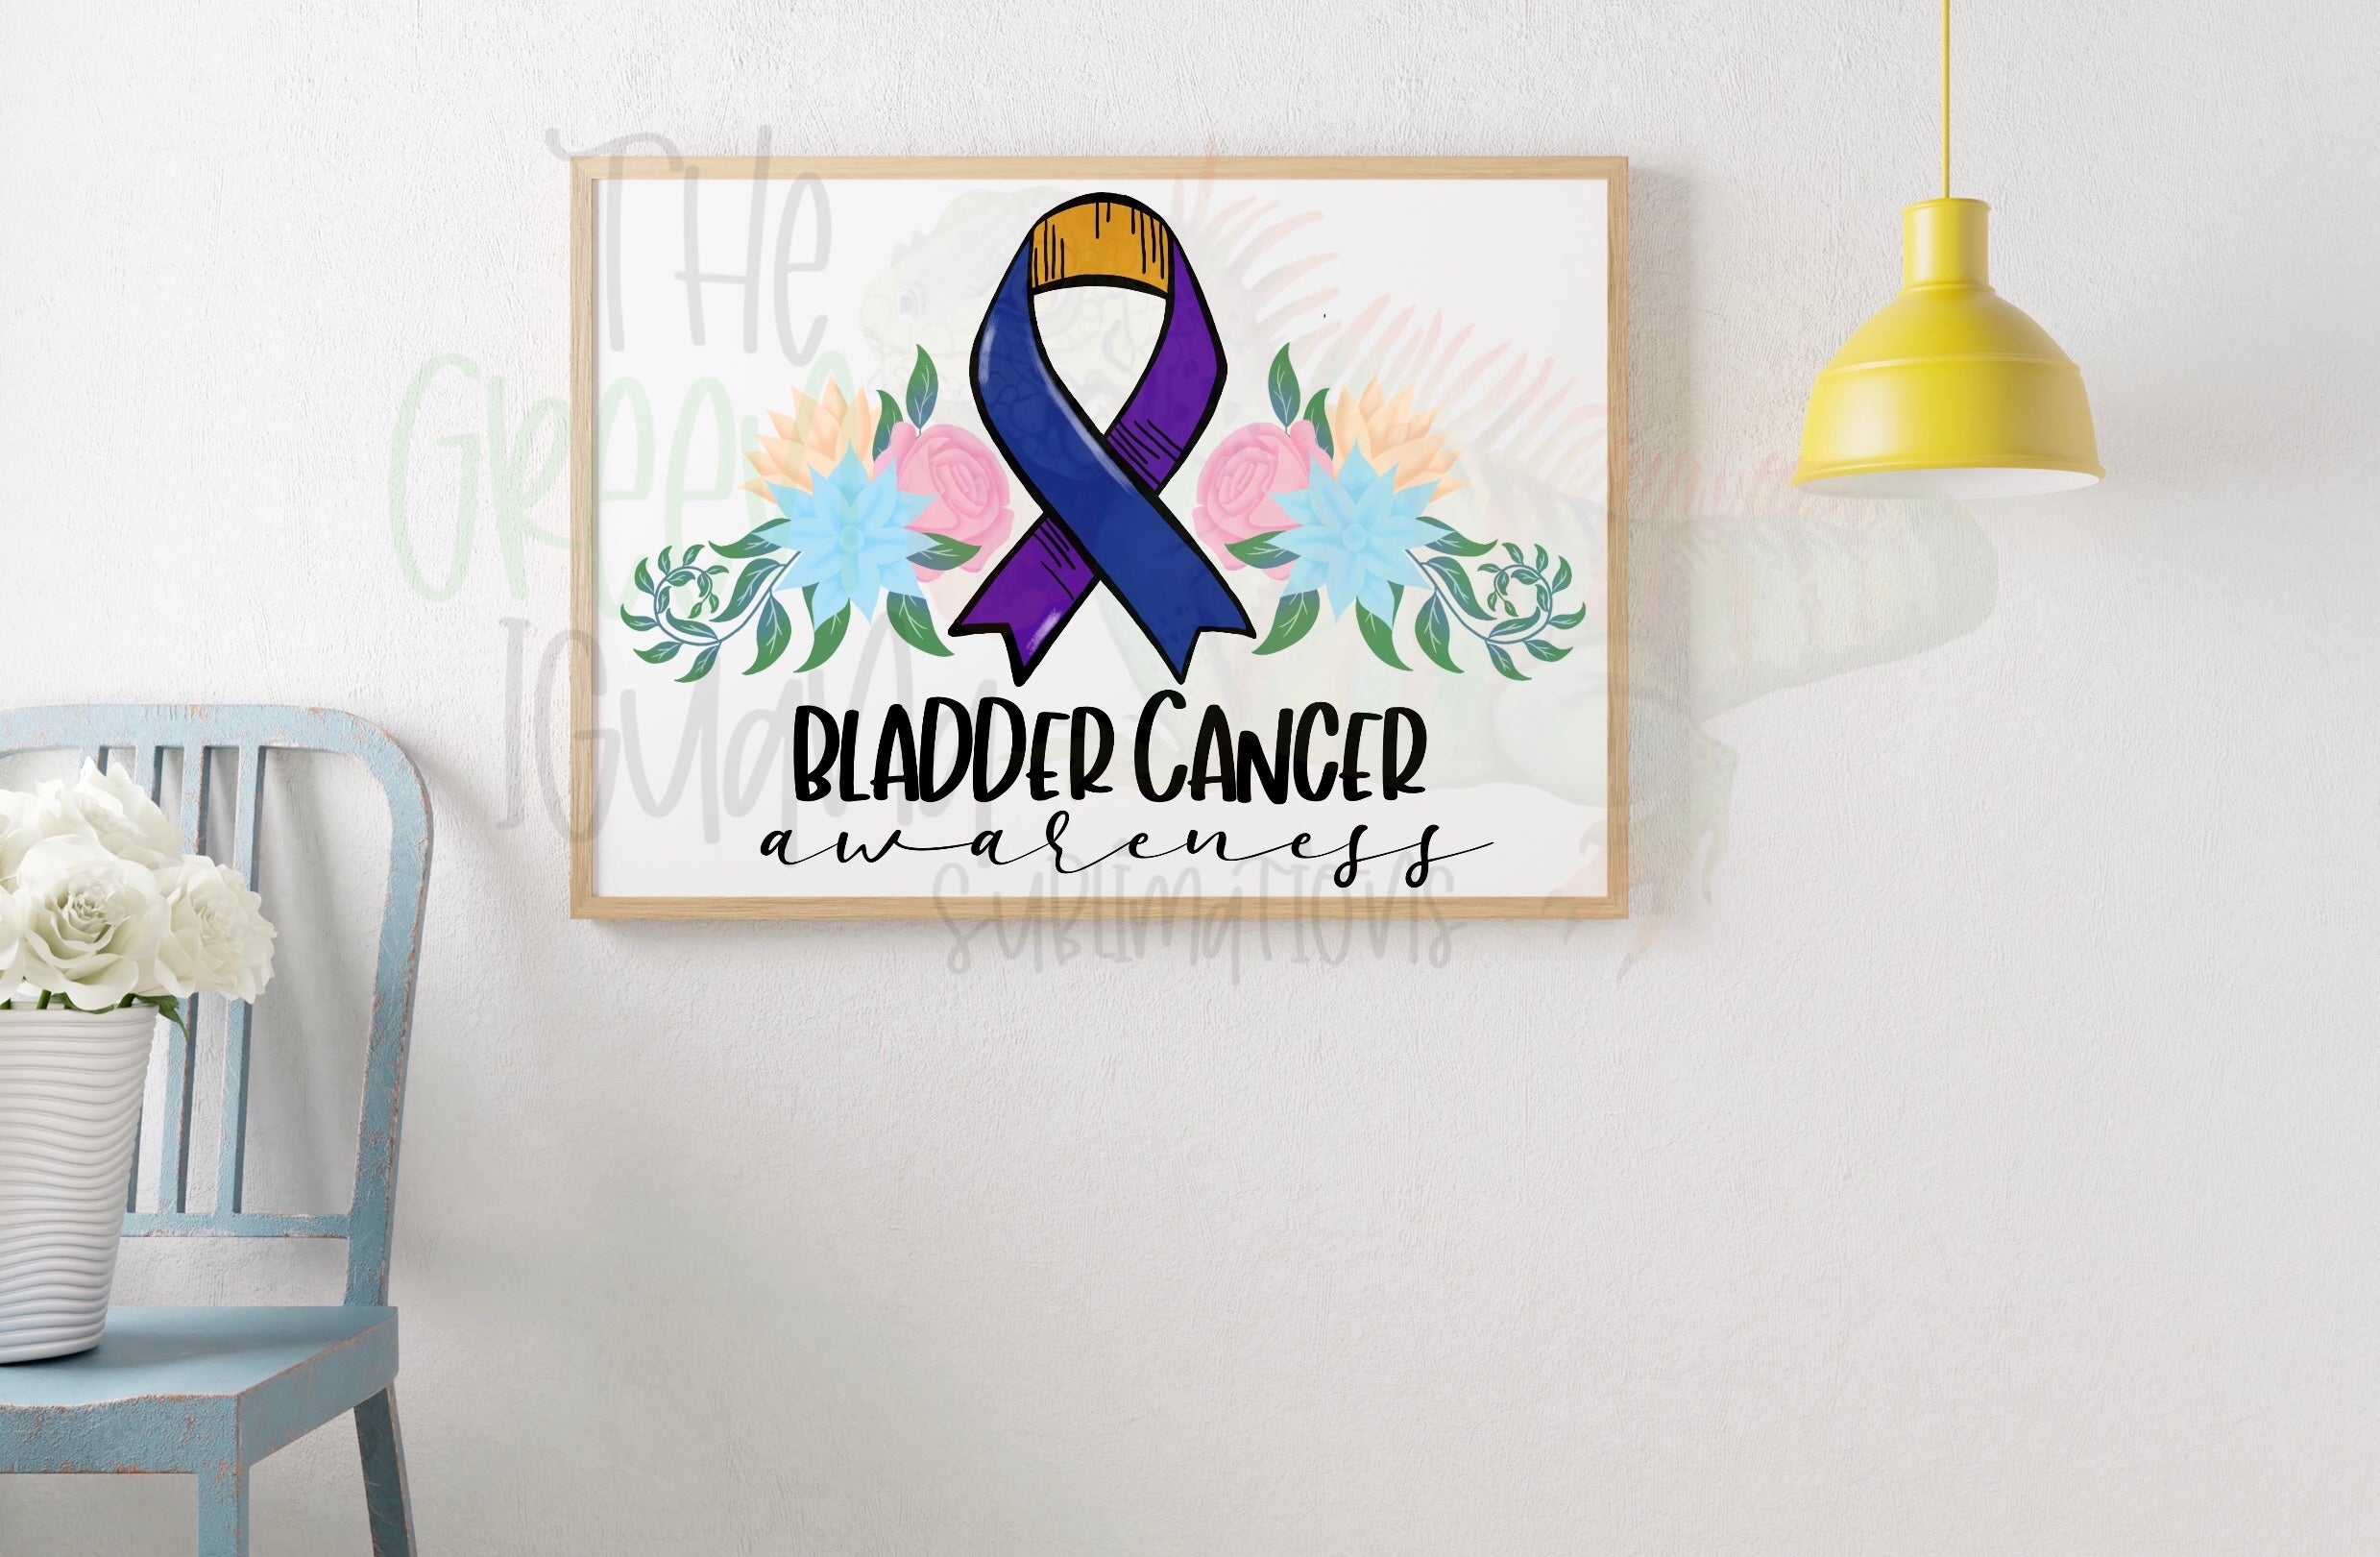 Bladder cancer awareness